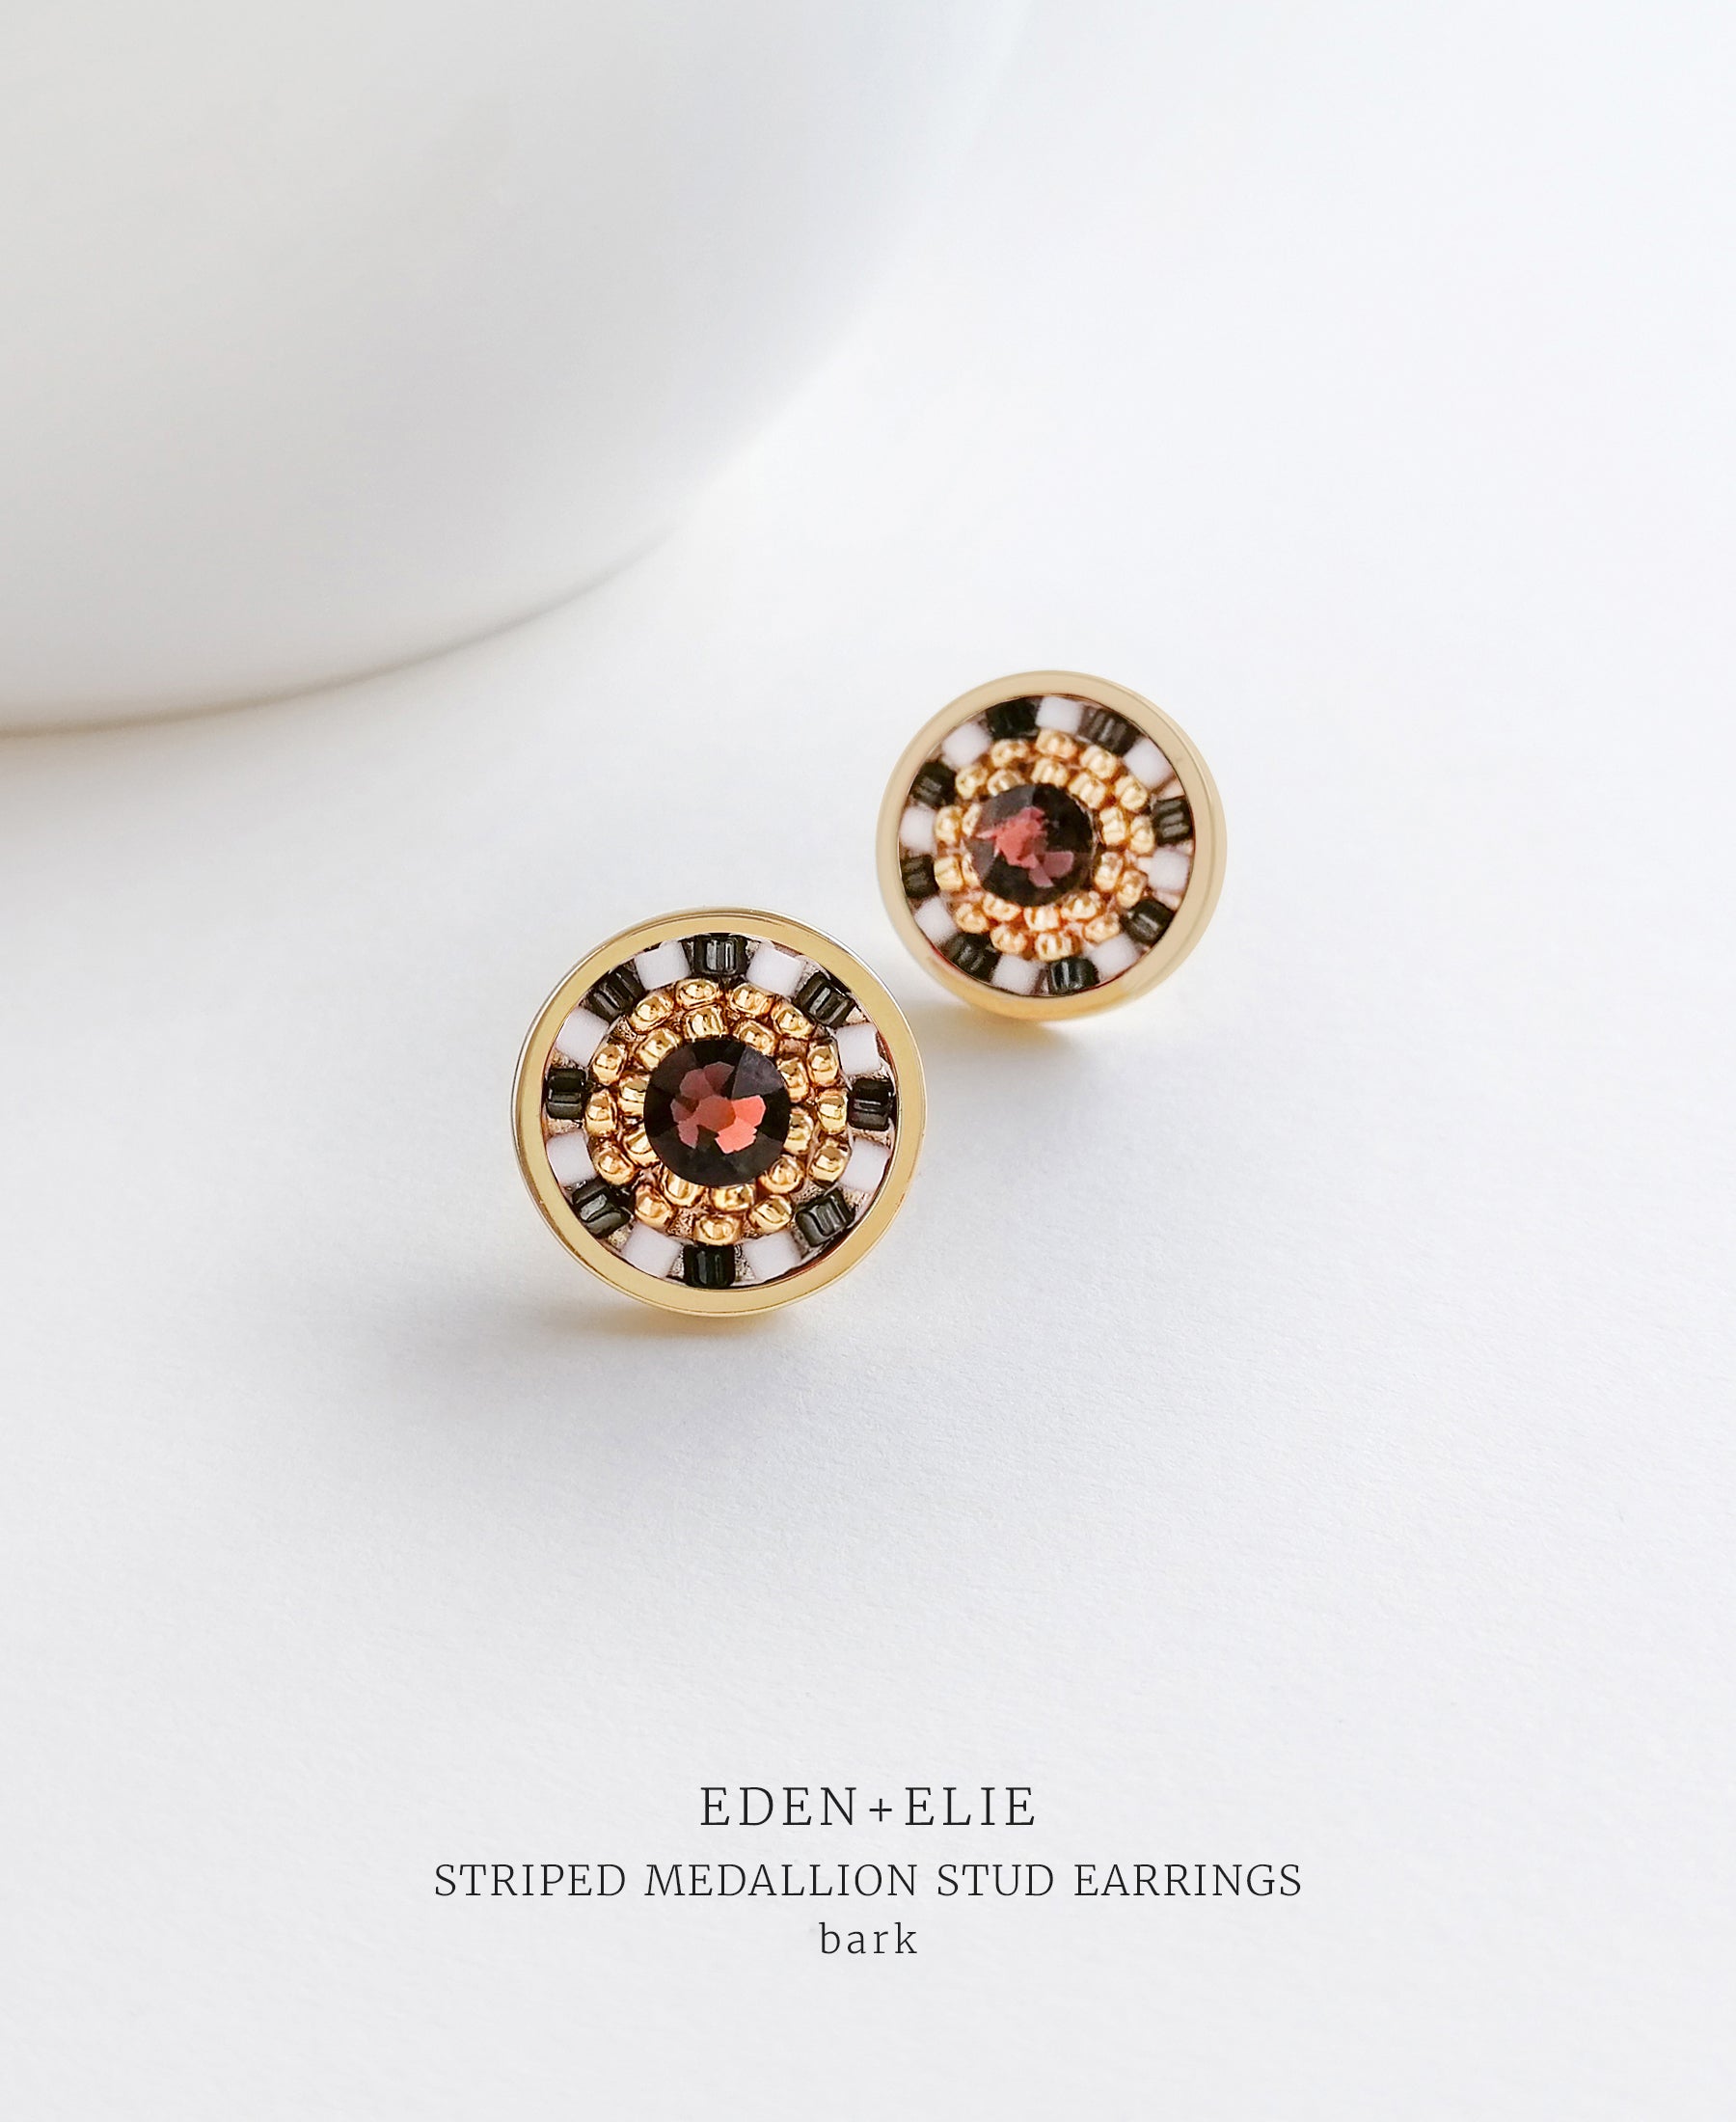 EDEN + ELIE Striped Medallion stud earrings - bark